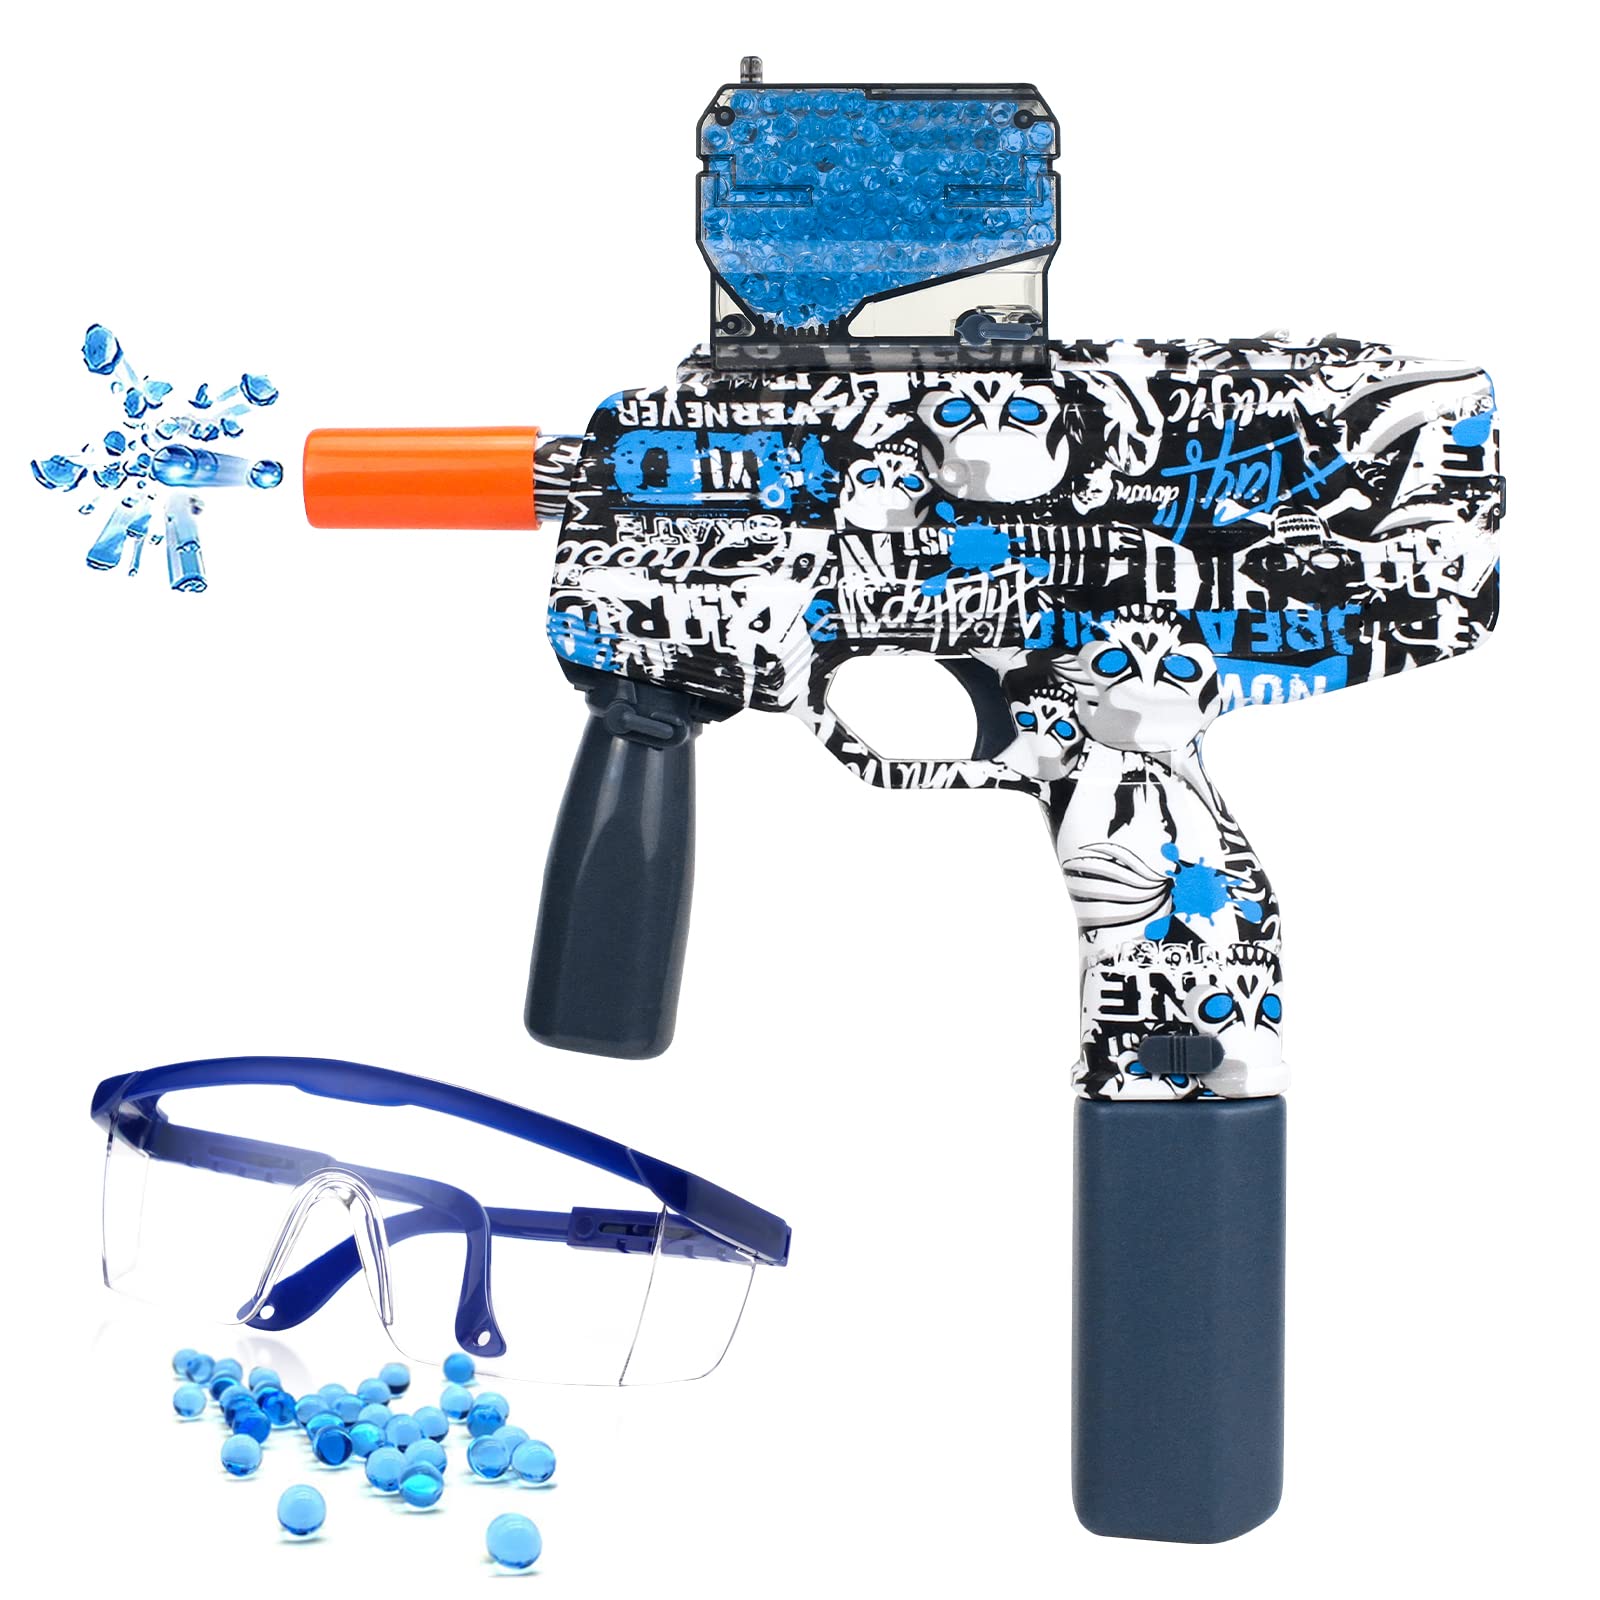 Gelblasterbest™ MP9 Graffiti Gel Blaster  gelblasterbest Blue  